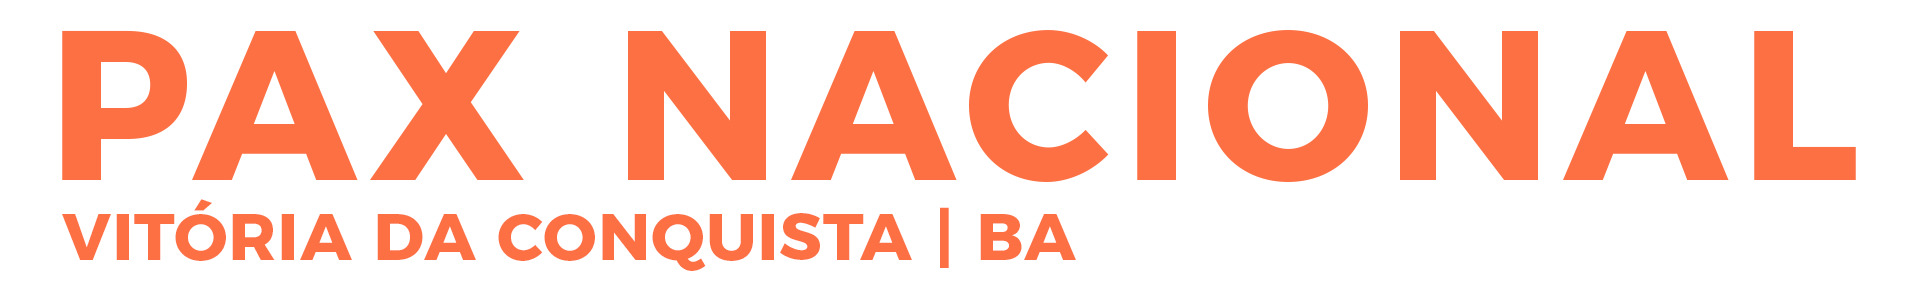 Pax Nacional Logo